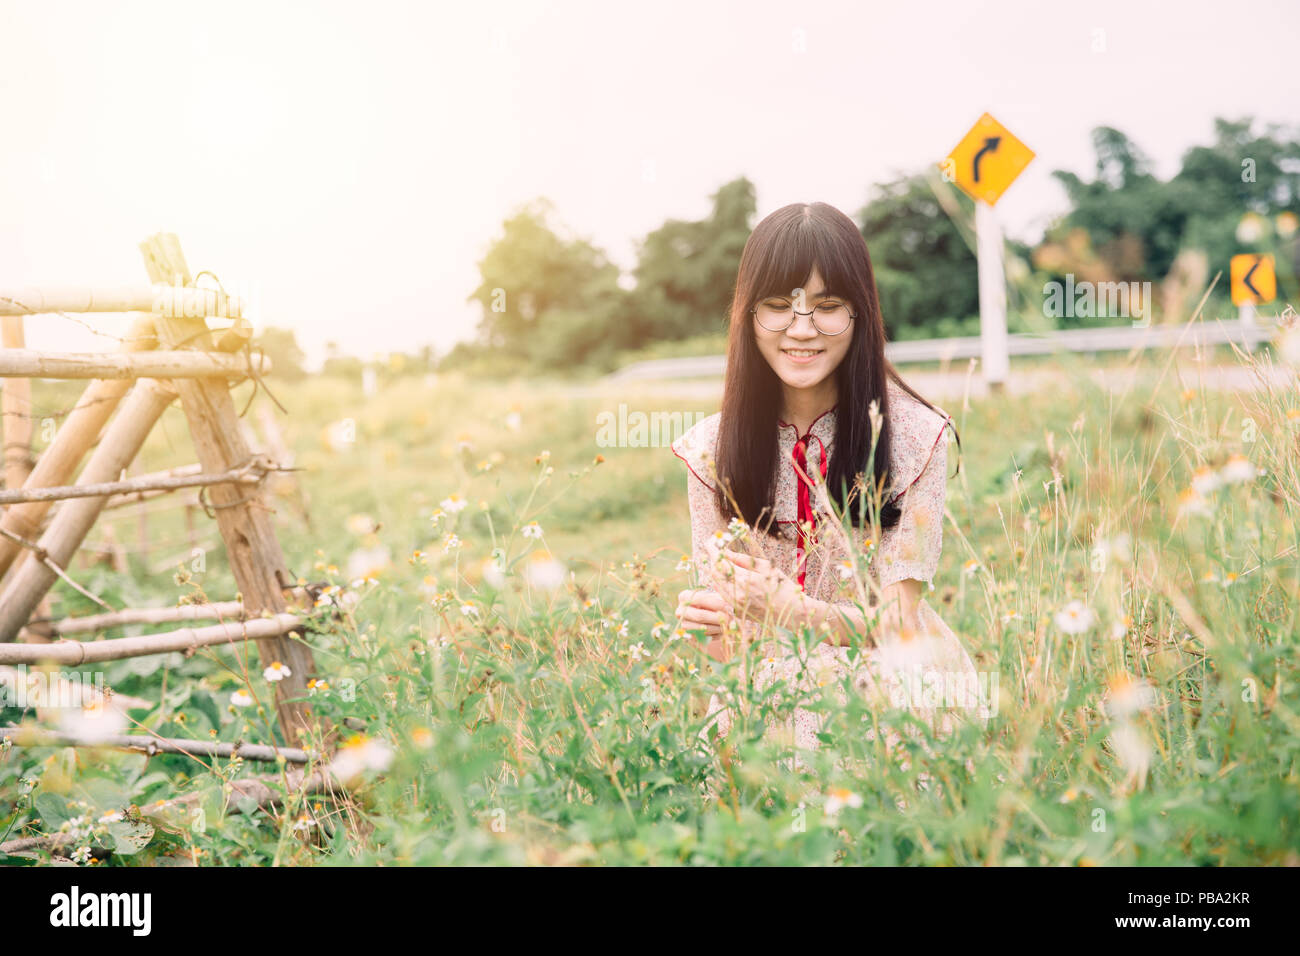 Süße asiatische Mädchen lächeln an der wiese gras Feld Blume am Straßenrand Stockfoto